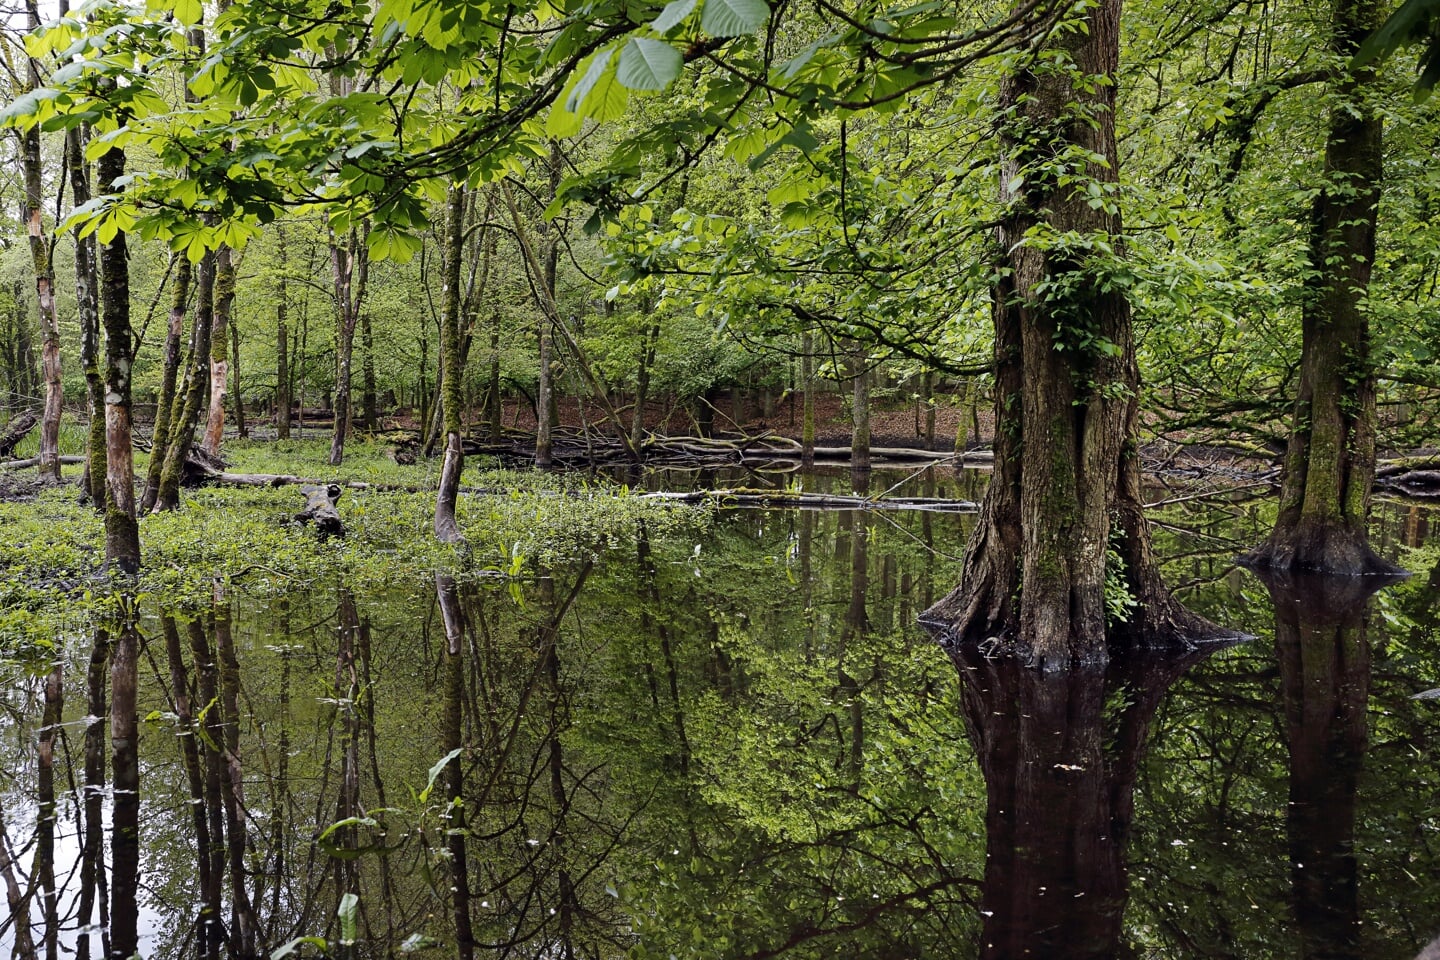 Bij de Leuvenumsche beek op de Veluwe staat een stukje bos onder water. 'De beek was een kanaal in het bos, waar het water uit denderde als het hard regende, terwijl het bos droog bleef. Doordat de beek nu ondieper is, stroomt hij over en is er een lange moeraszone ontstaan.'